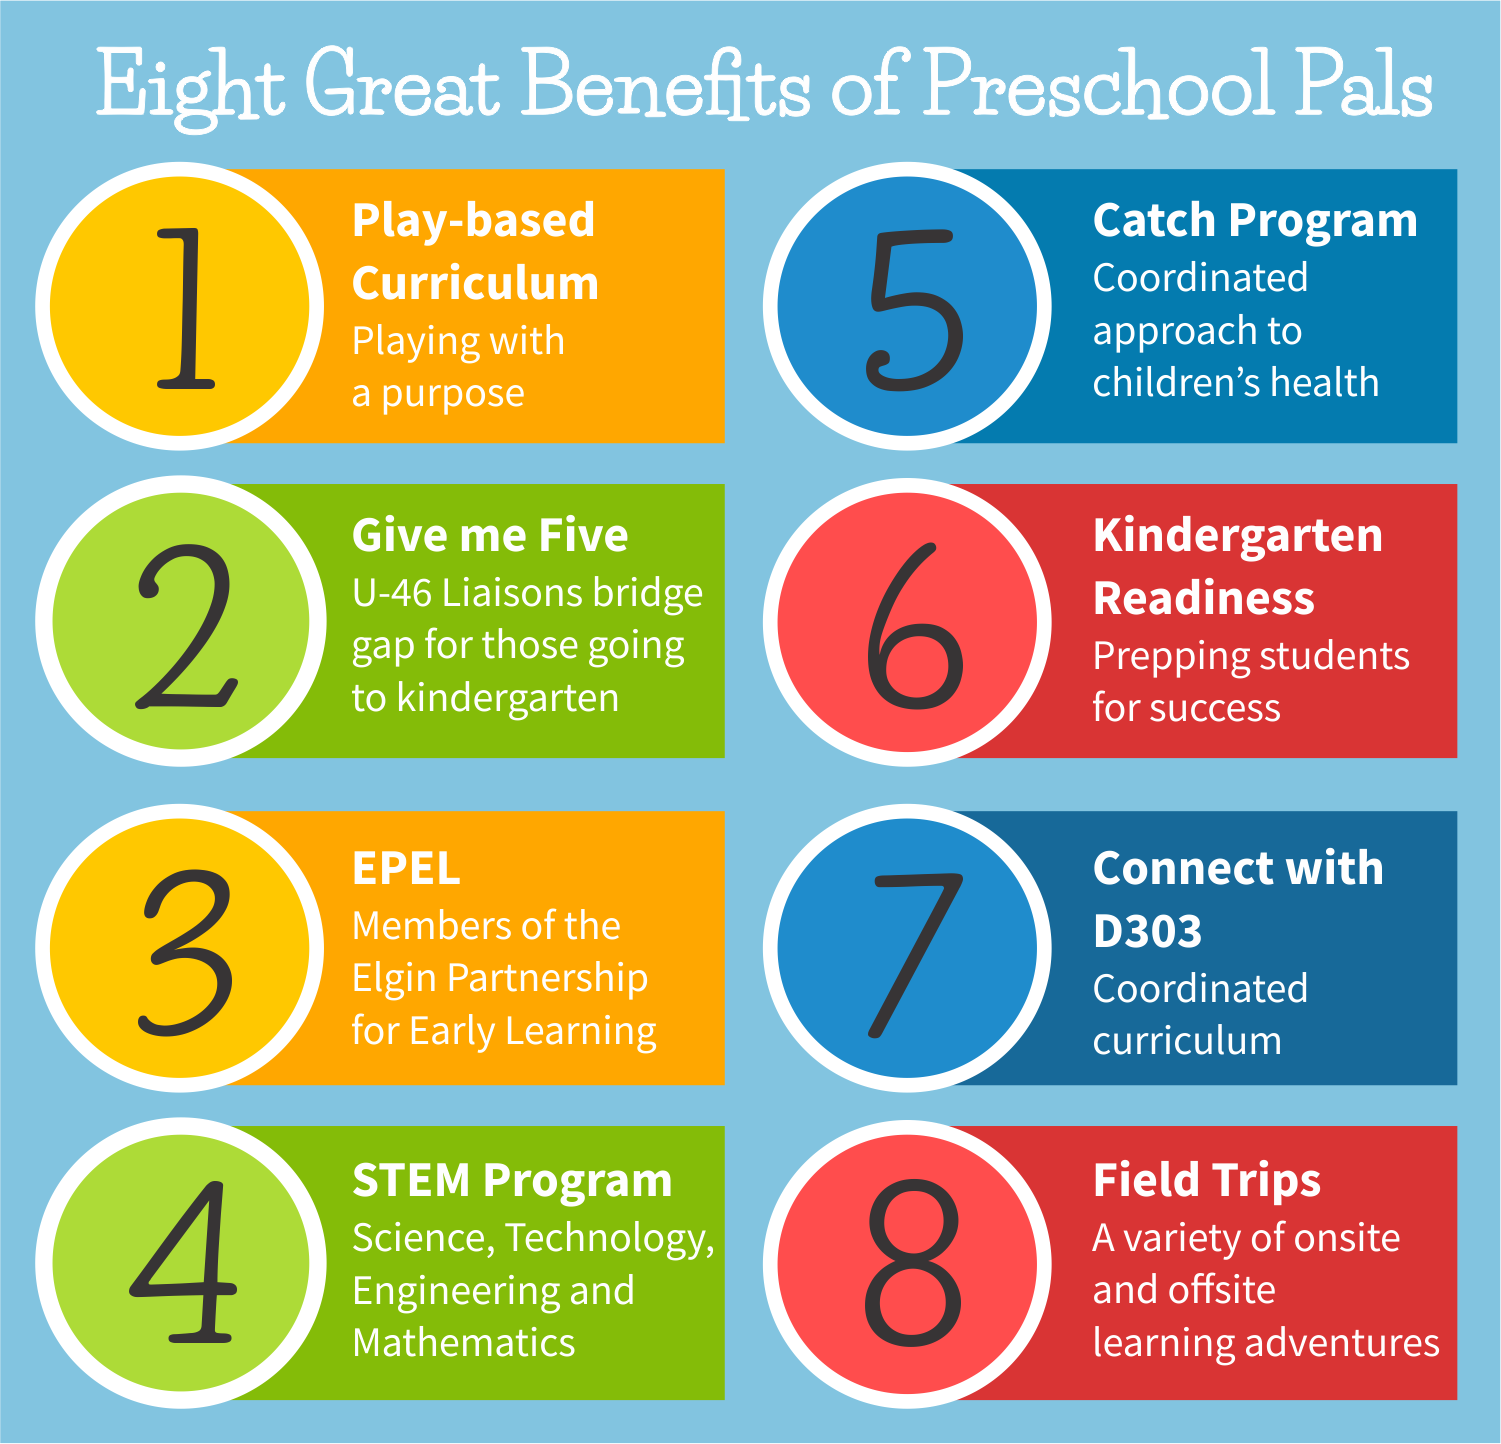 SEPR Preschool Pals 8 Reasons graphic